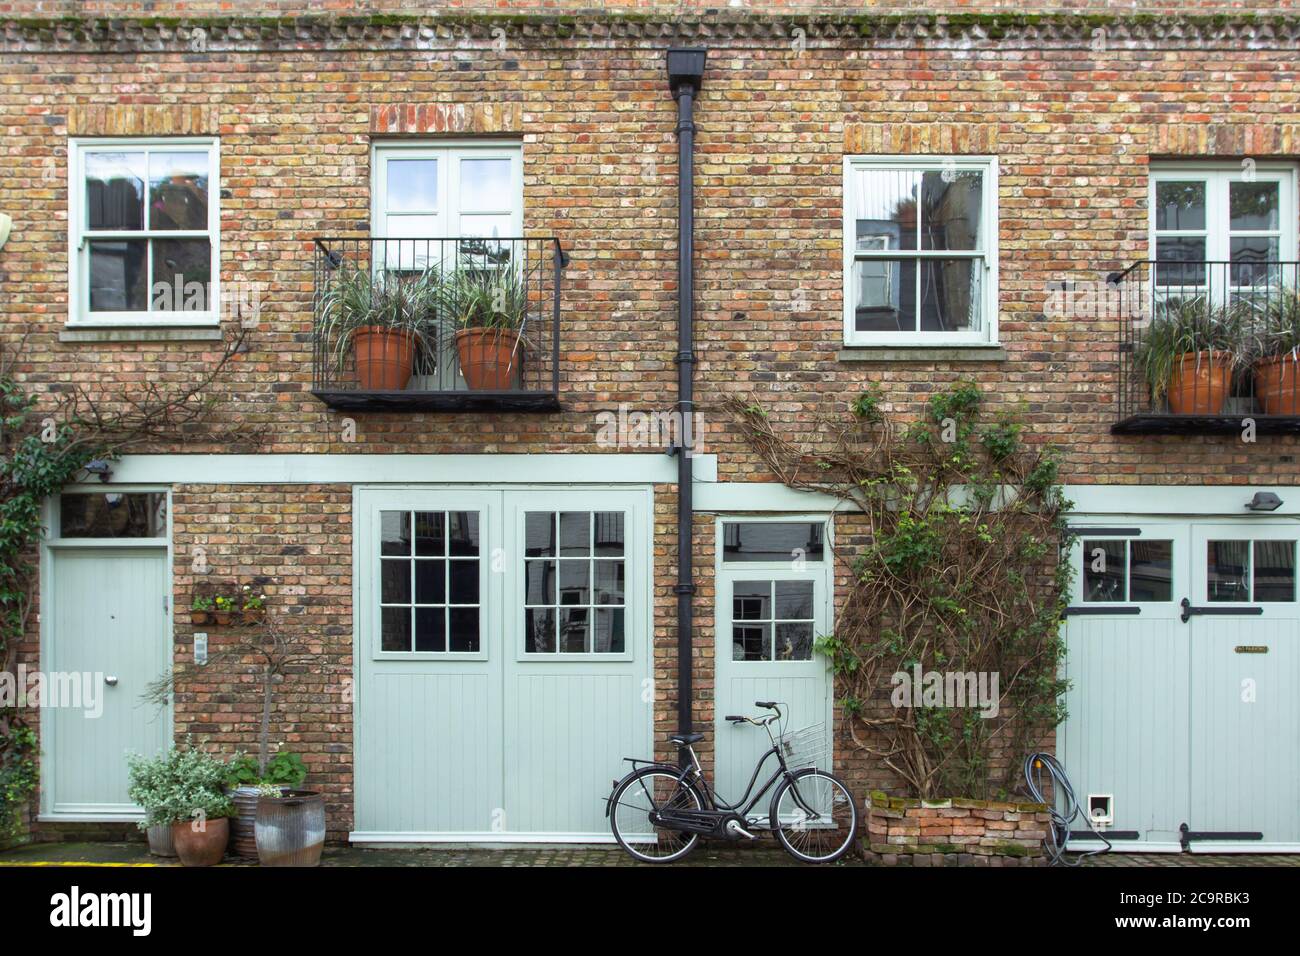 Parcheggio per biciclette di fronte a una casa residenziale a Londra, Regno Unito. Blocco di case londinesi. Architettura inglese. Elegante edificio di appartamenti. Immobiliare c Foto Stock